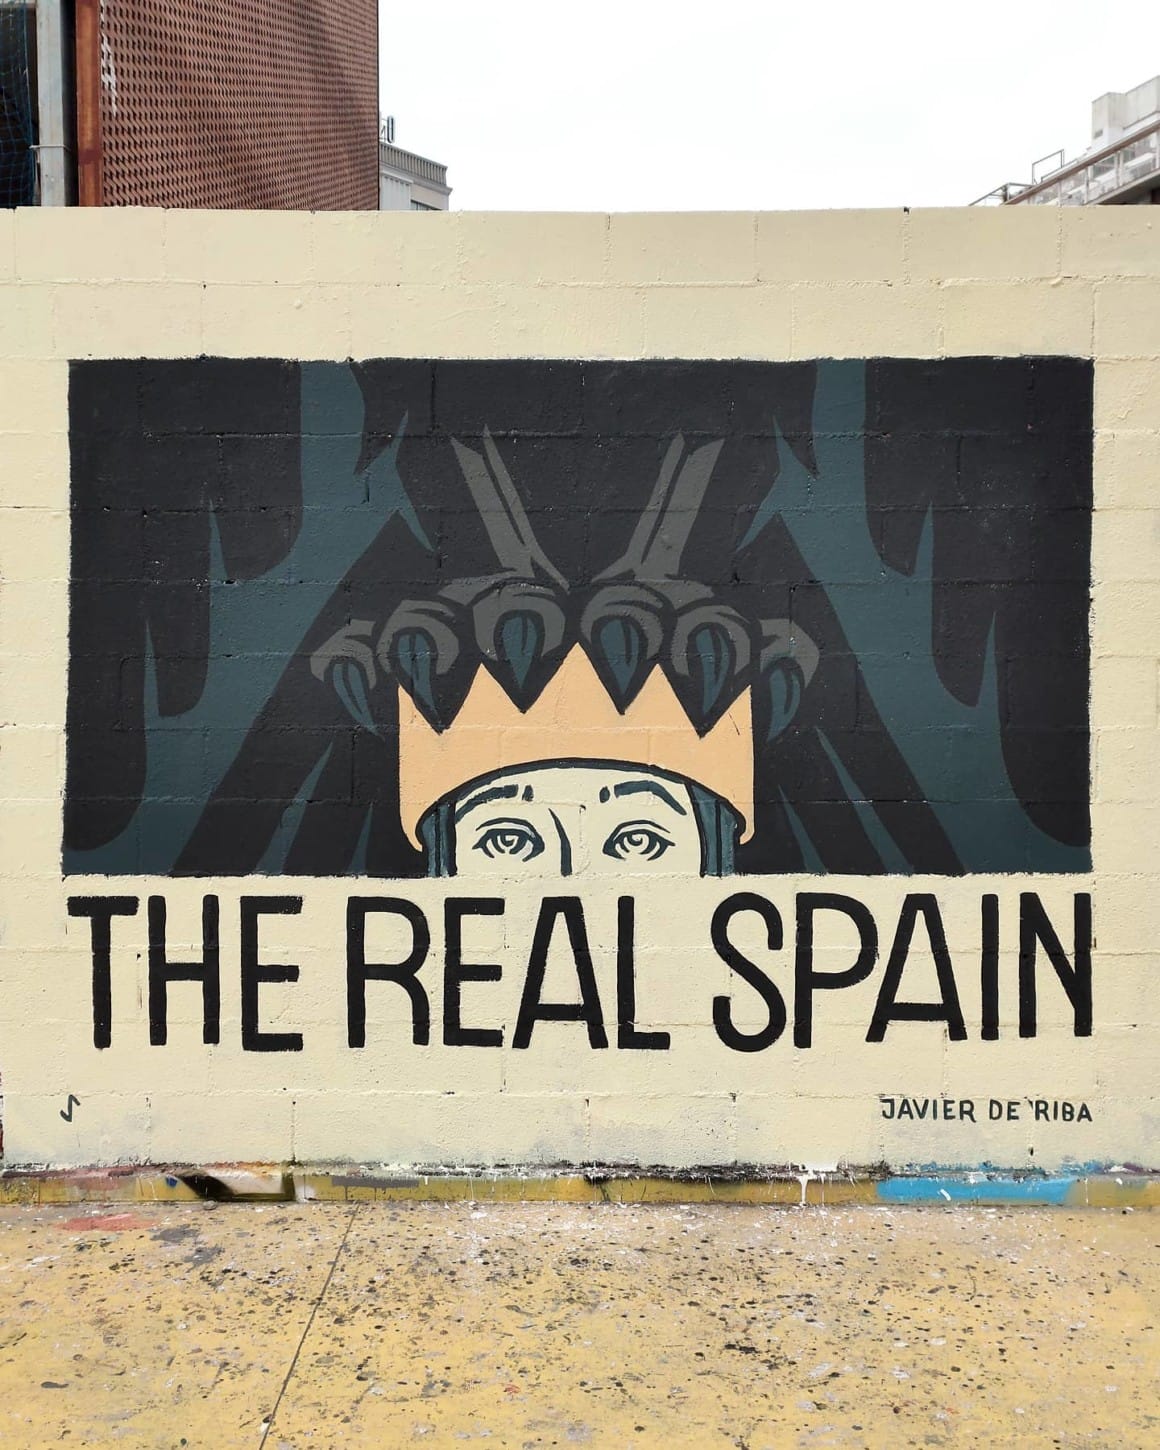 street art sur un mur, inscription "The Real Spain" avec une couronne sur laquelle se dessine les serres d'un corbeau